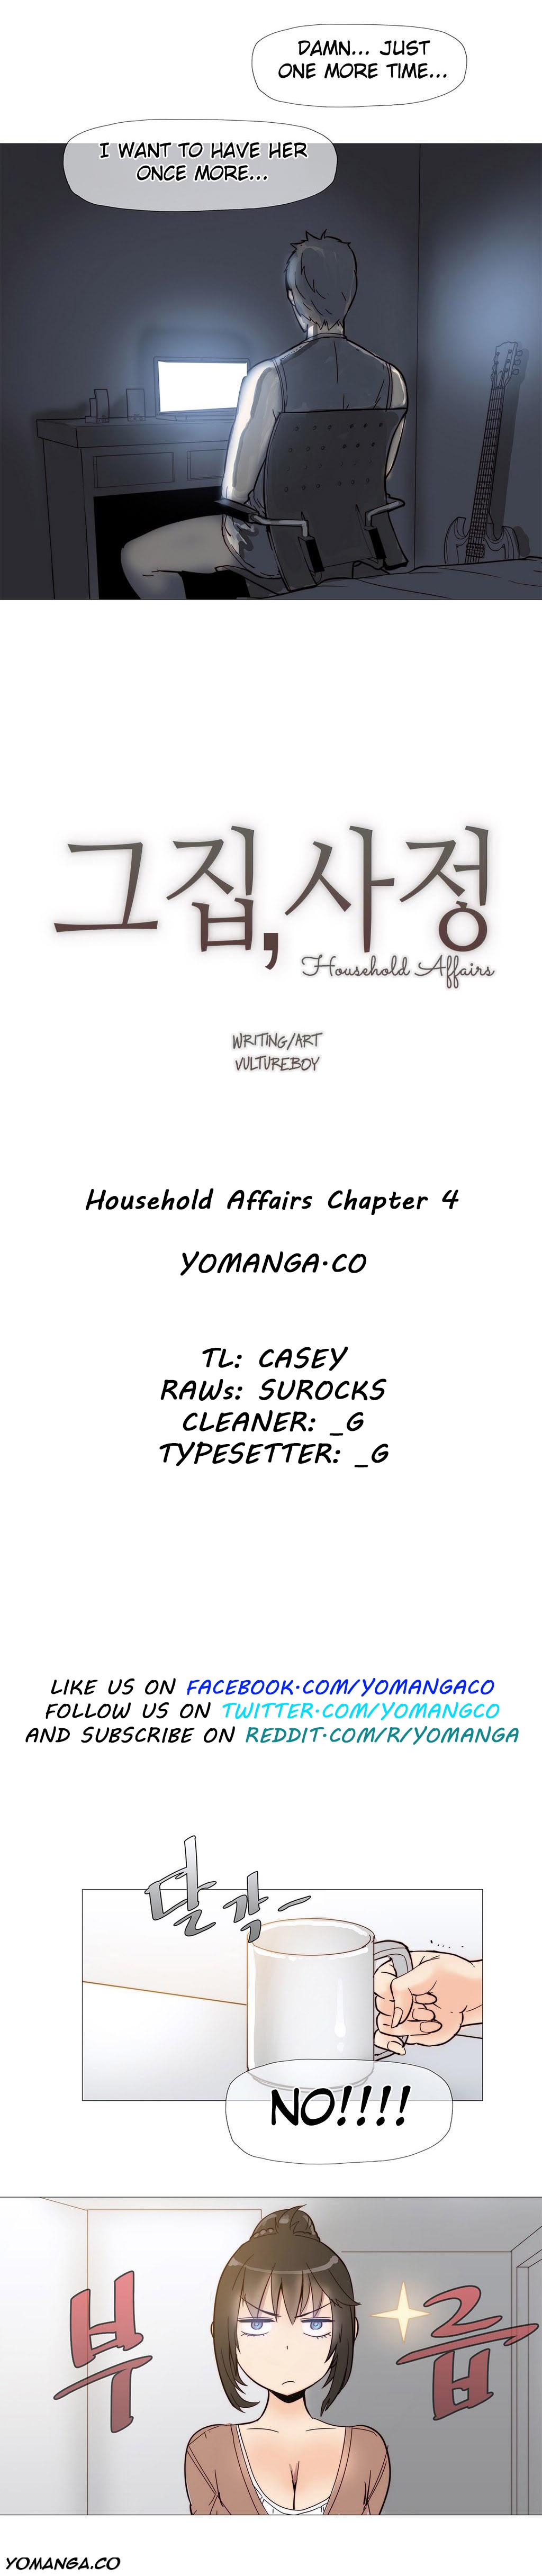 Household Affairs ch.4 2